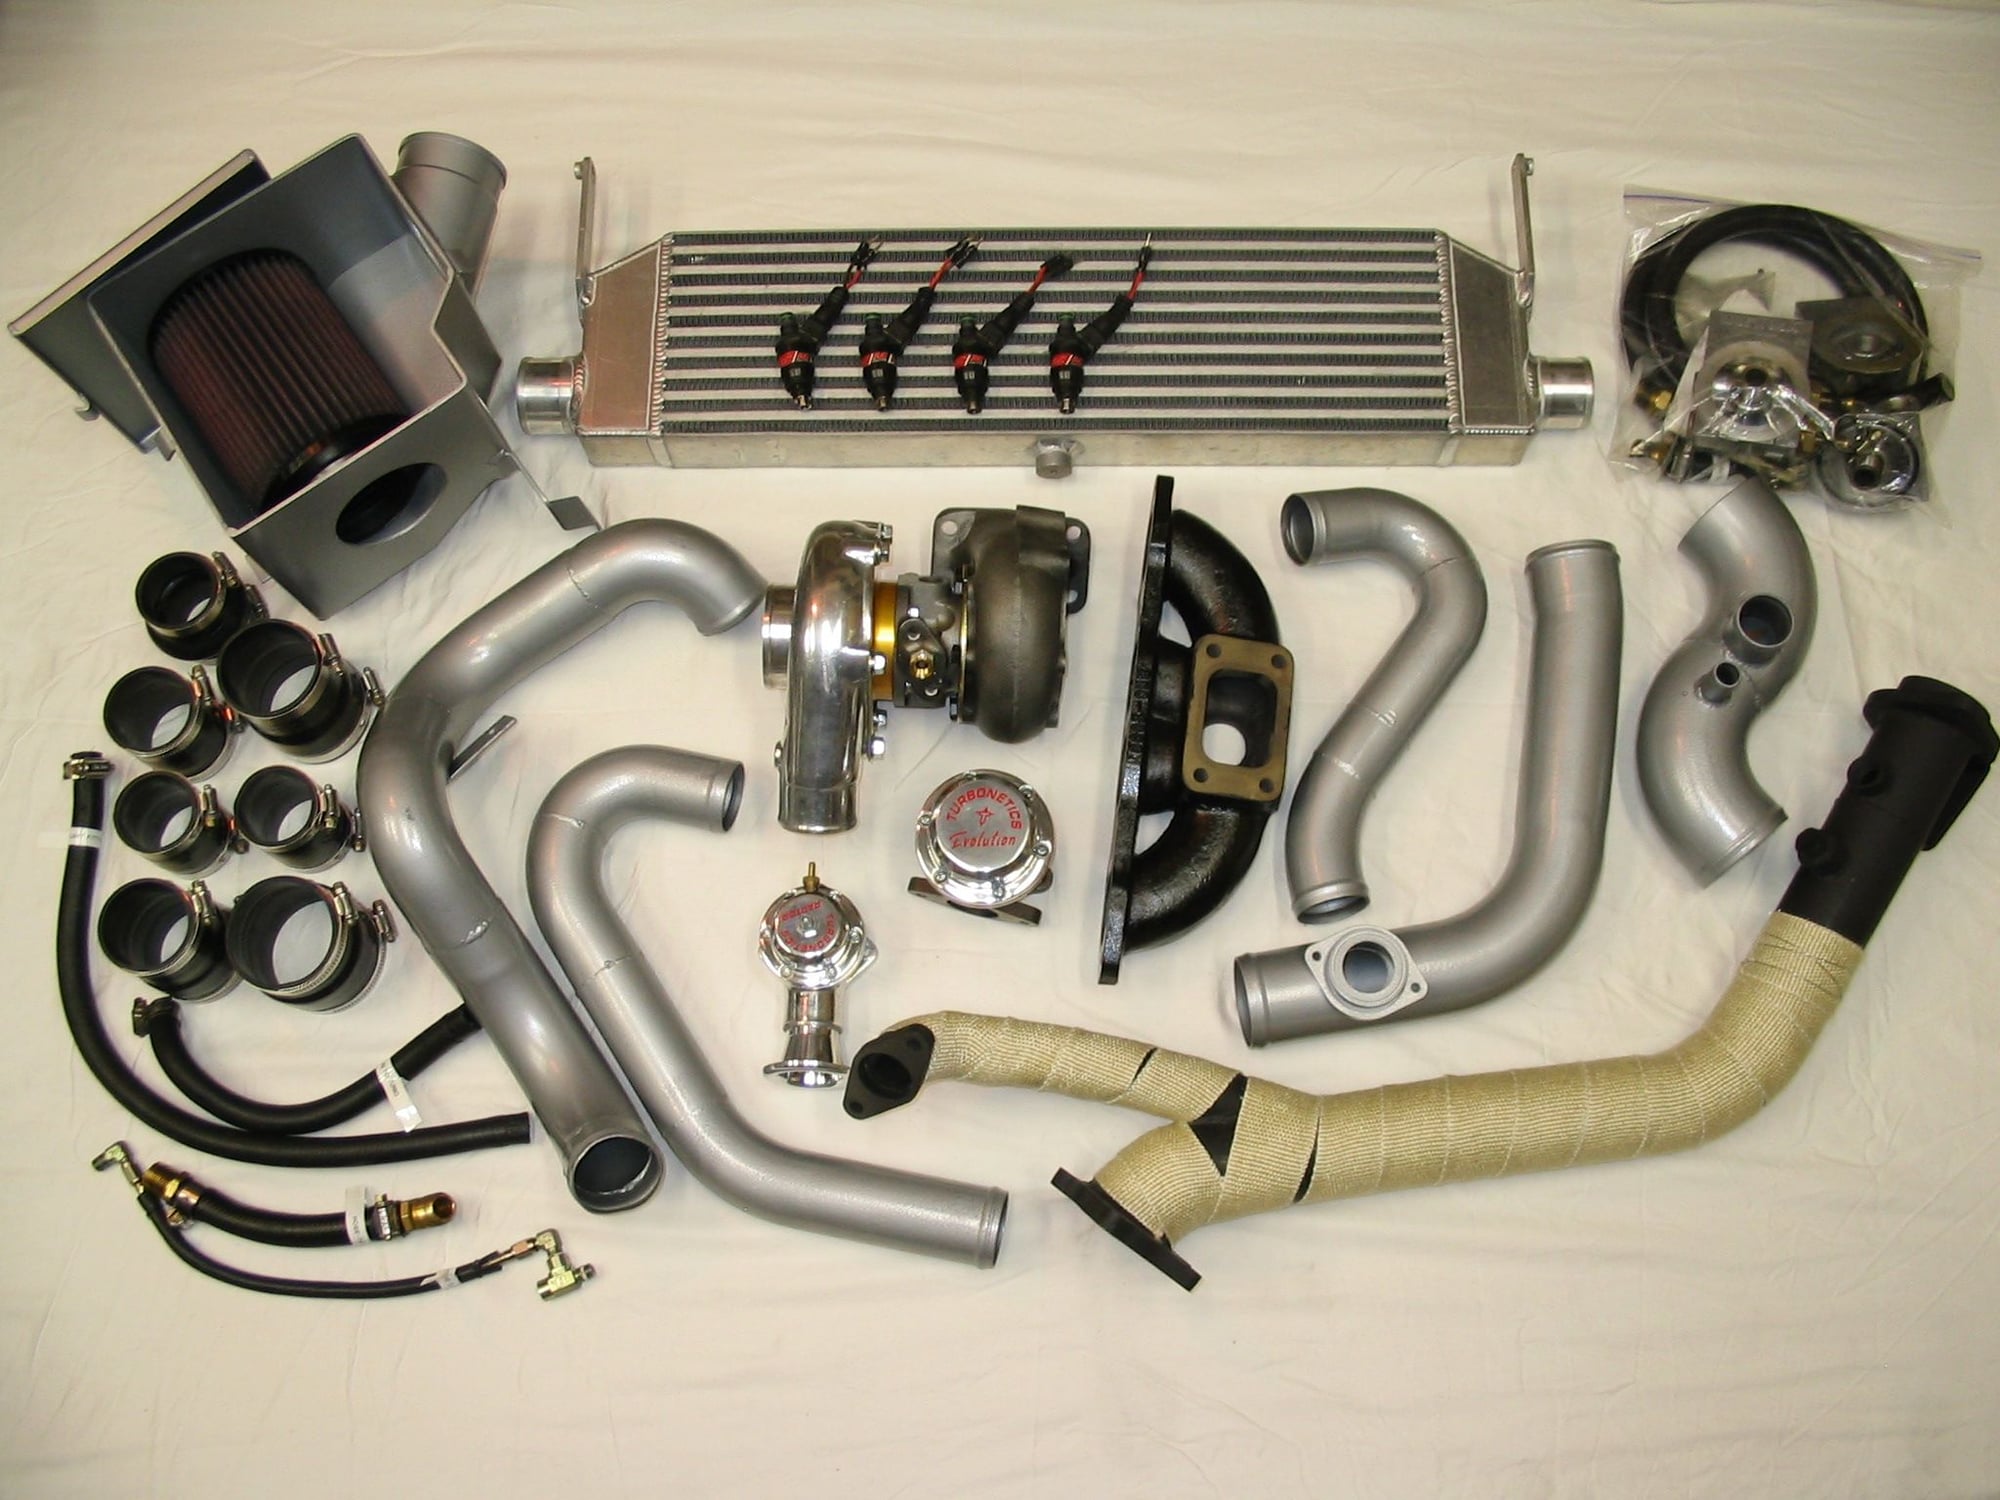 FOR SALE: Custom designed turbocharger kit for S2000. 